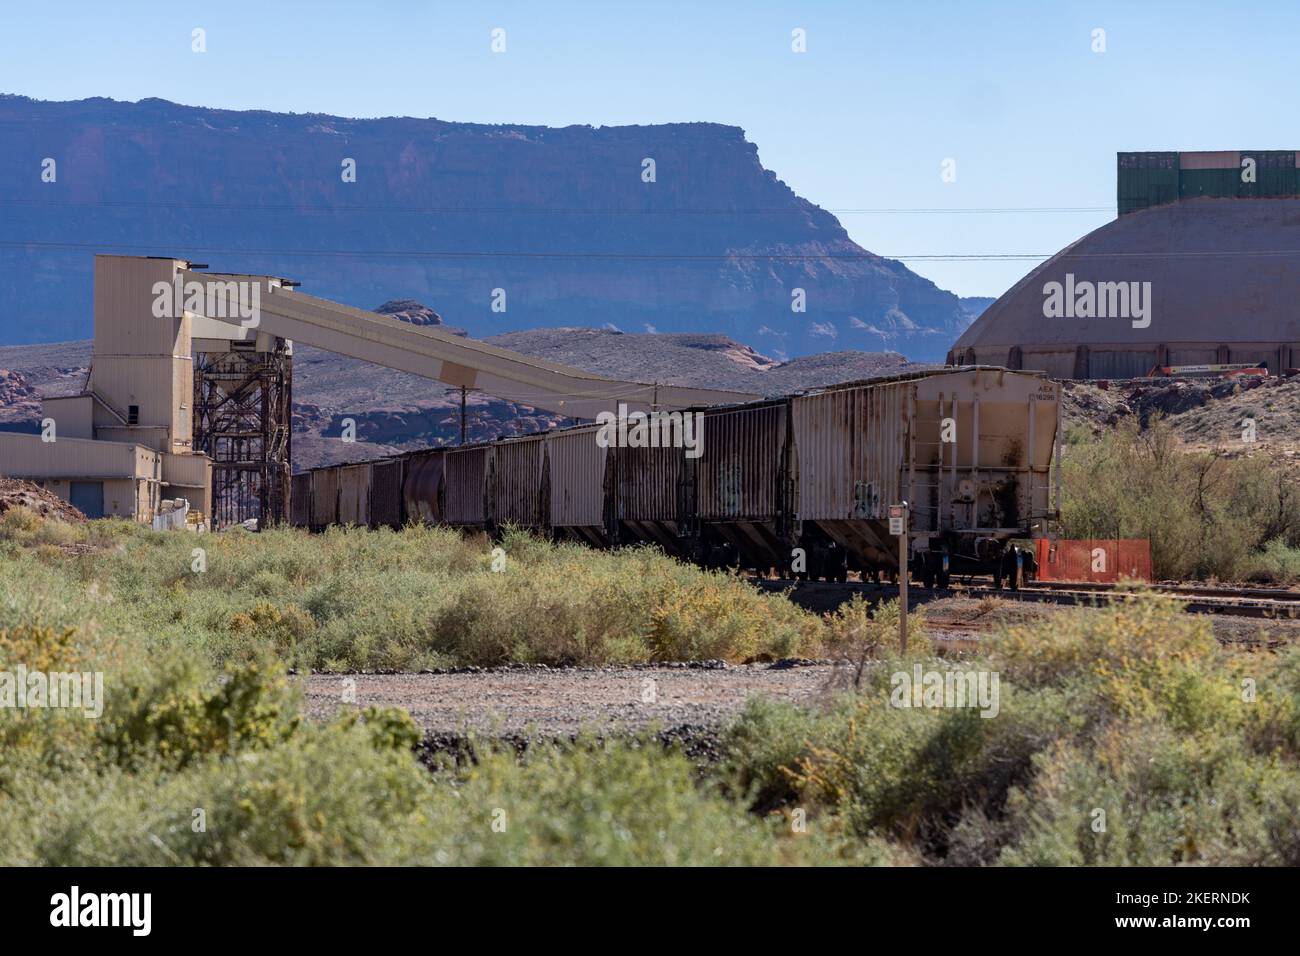 Instalación de carga de vagones de ferrocarril en la planta de procesamiento de una mina de potasa que utiliza un método de extracción de soluciones cerca de Moab, Utah. Foto de stock